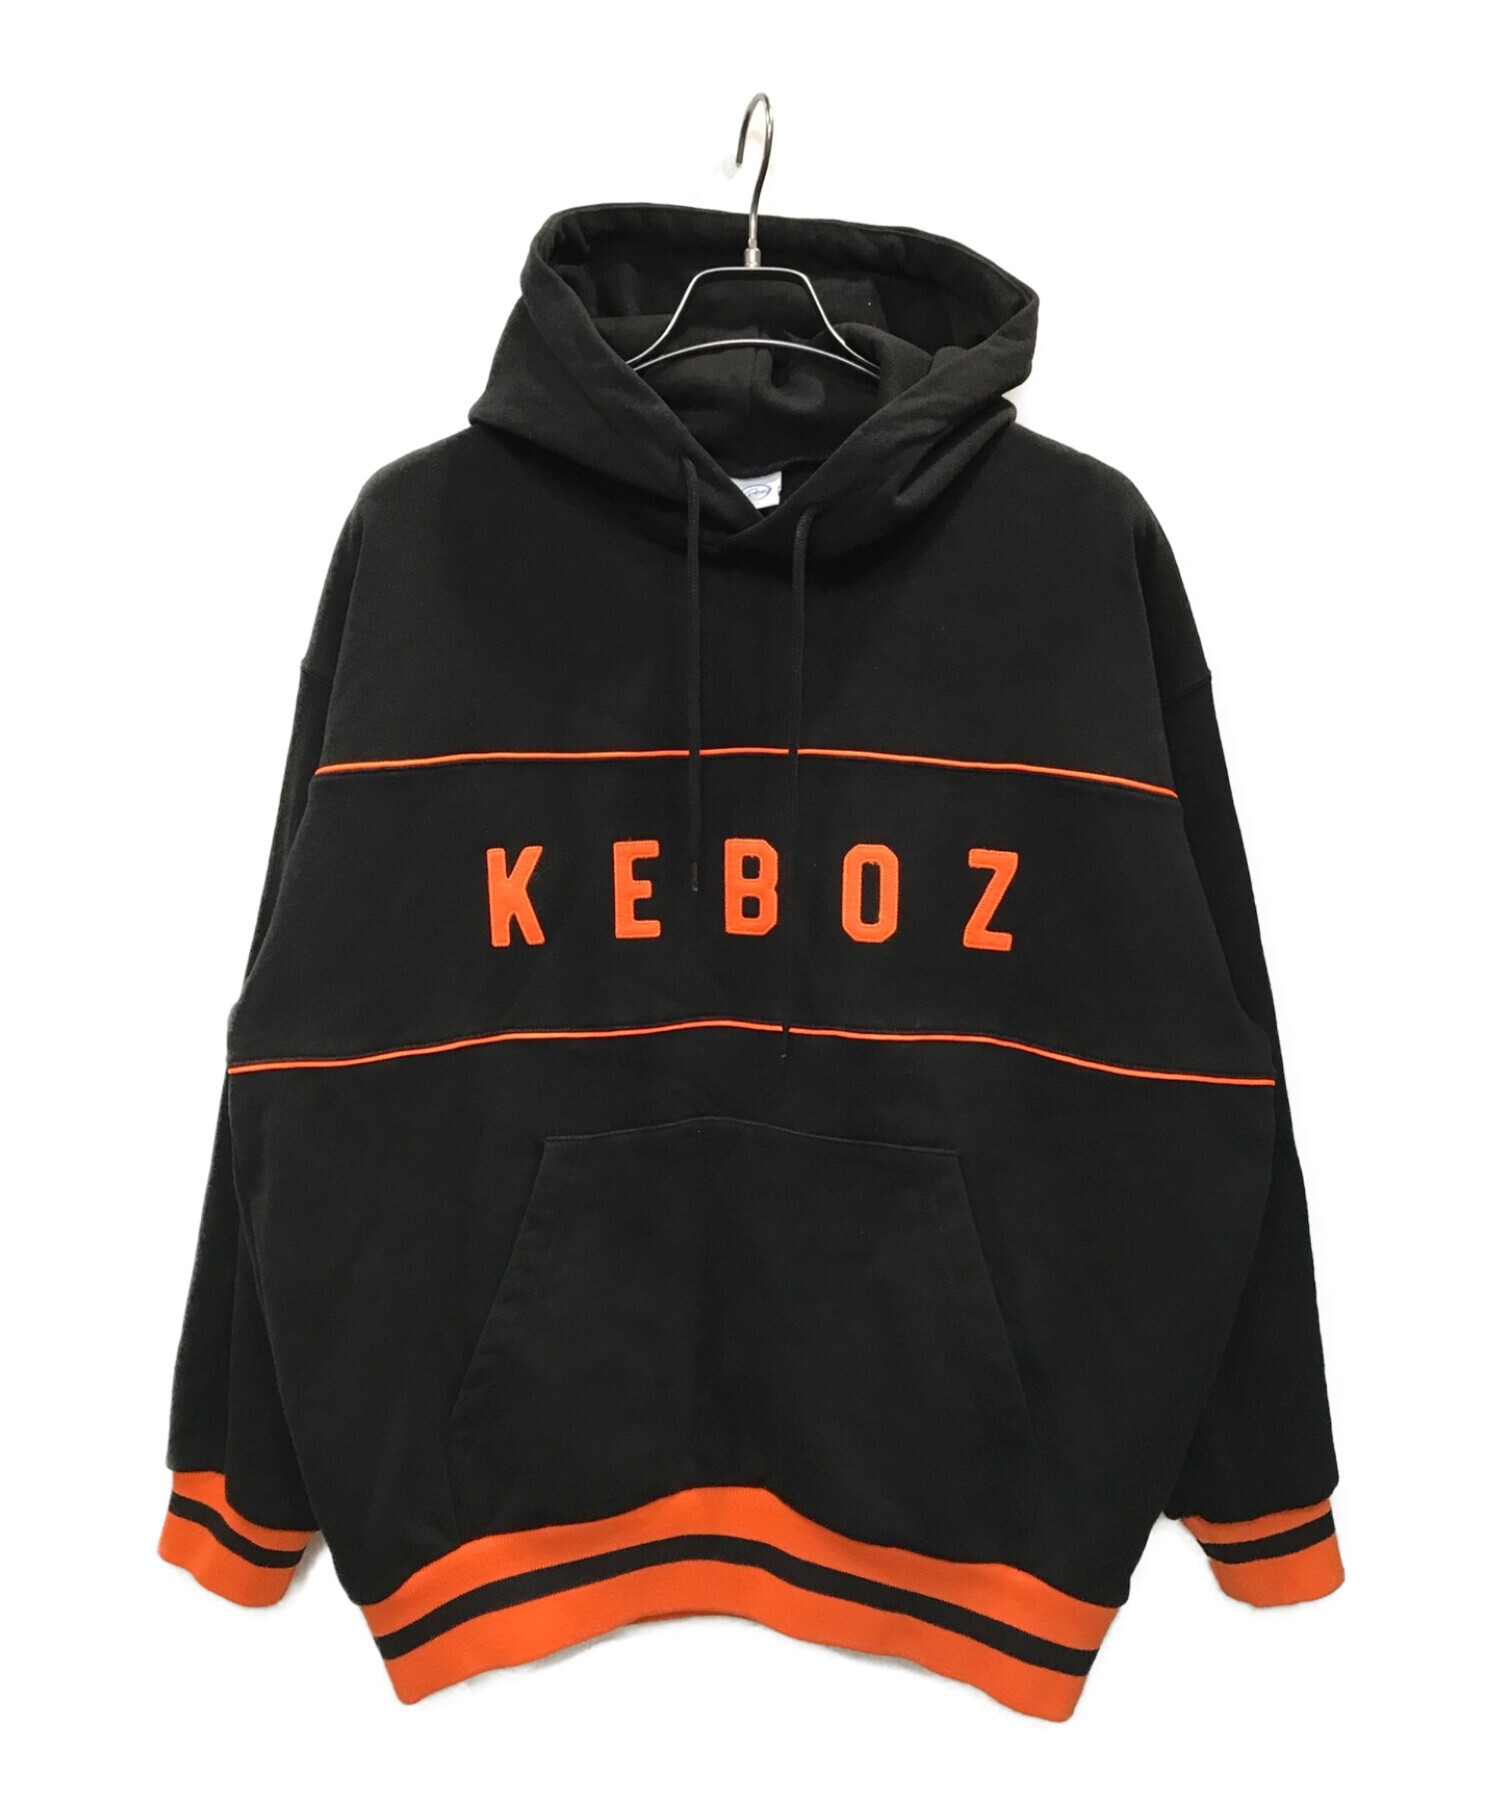 KEBOZ (ケボズ) パーカー ブラック×オレンジ サイズ:S